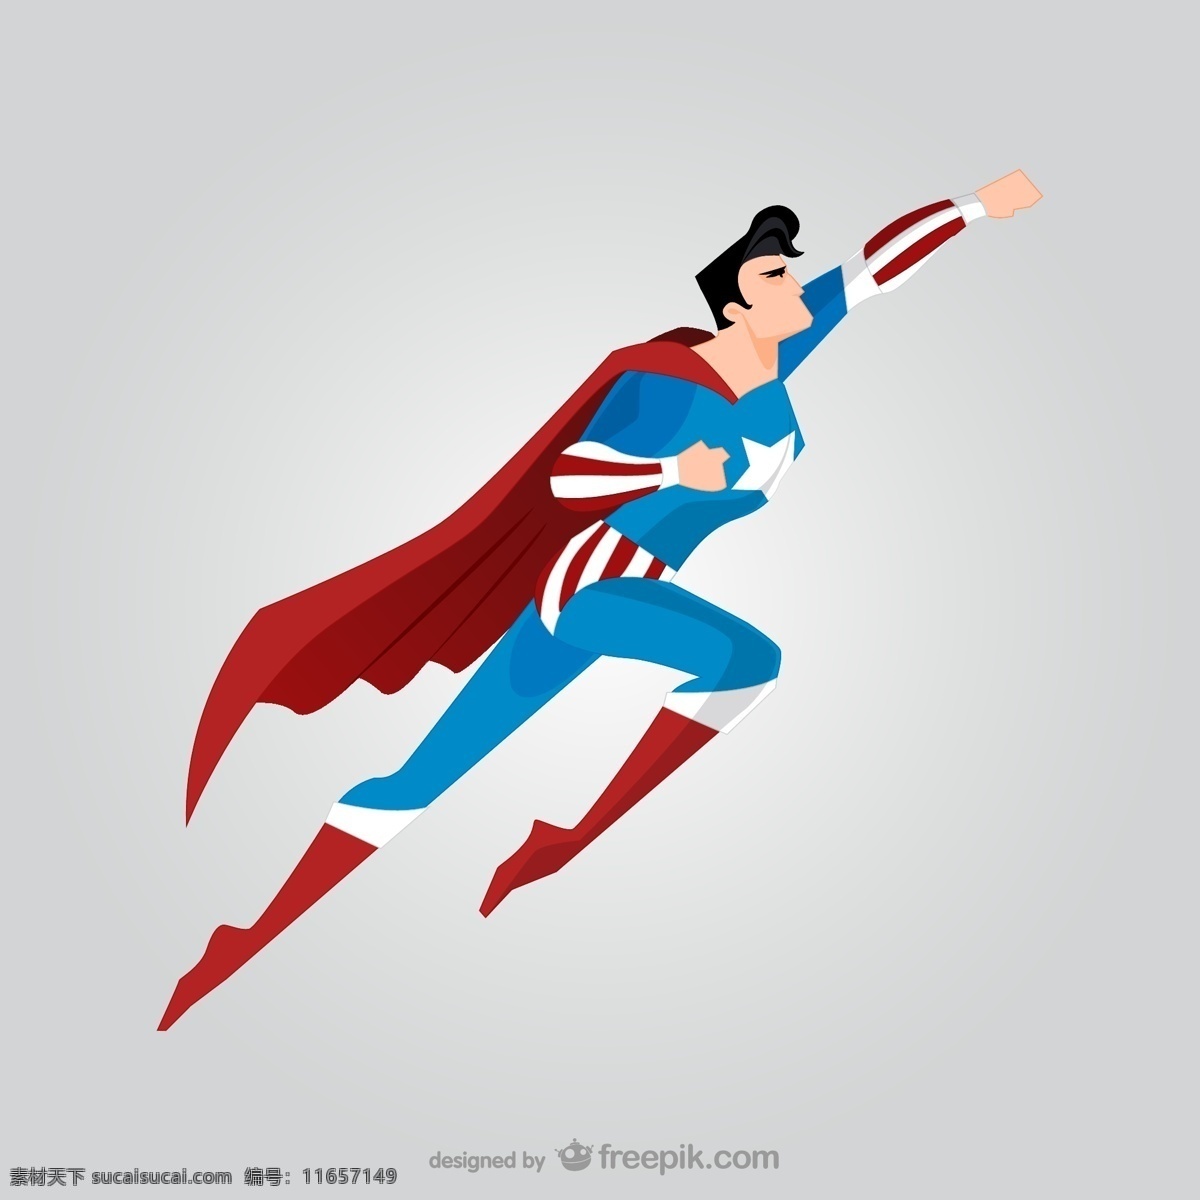 superman 超人 英雄联盟 英雄 卡通 高清 动漫人物系列 英雄人物 动漫英雄 正义英雄 动漫人物 动漫动画 矢量图片 矢量素材 其他矢量 矢量 贴图 插图 插画